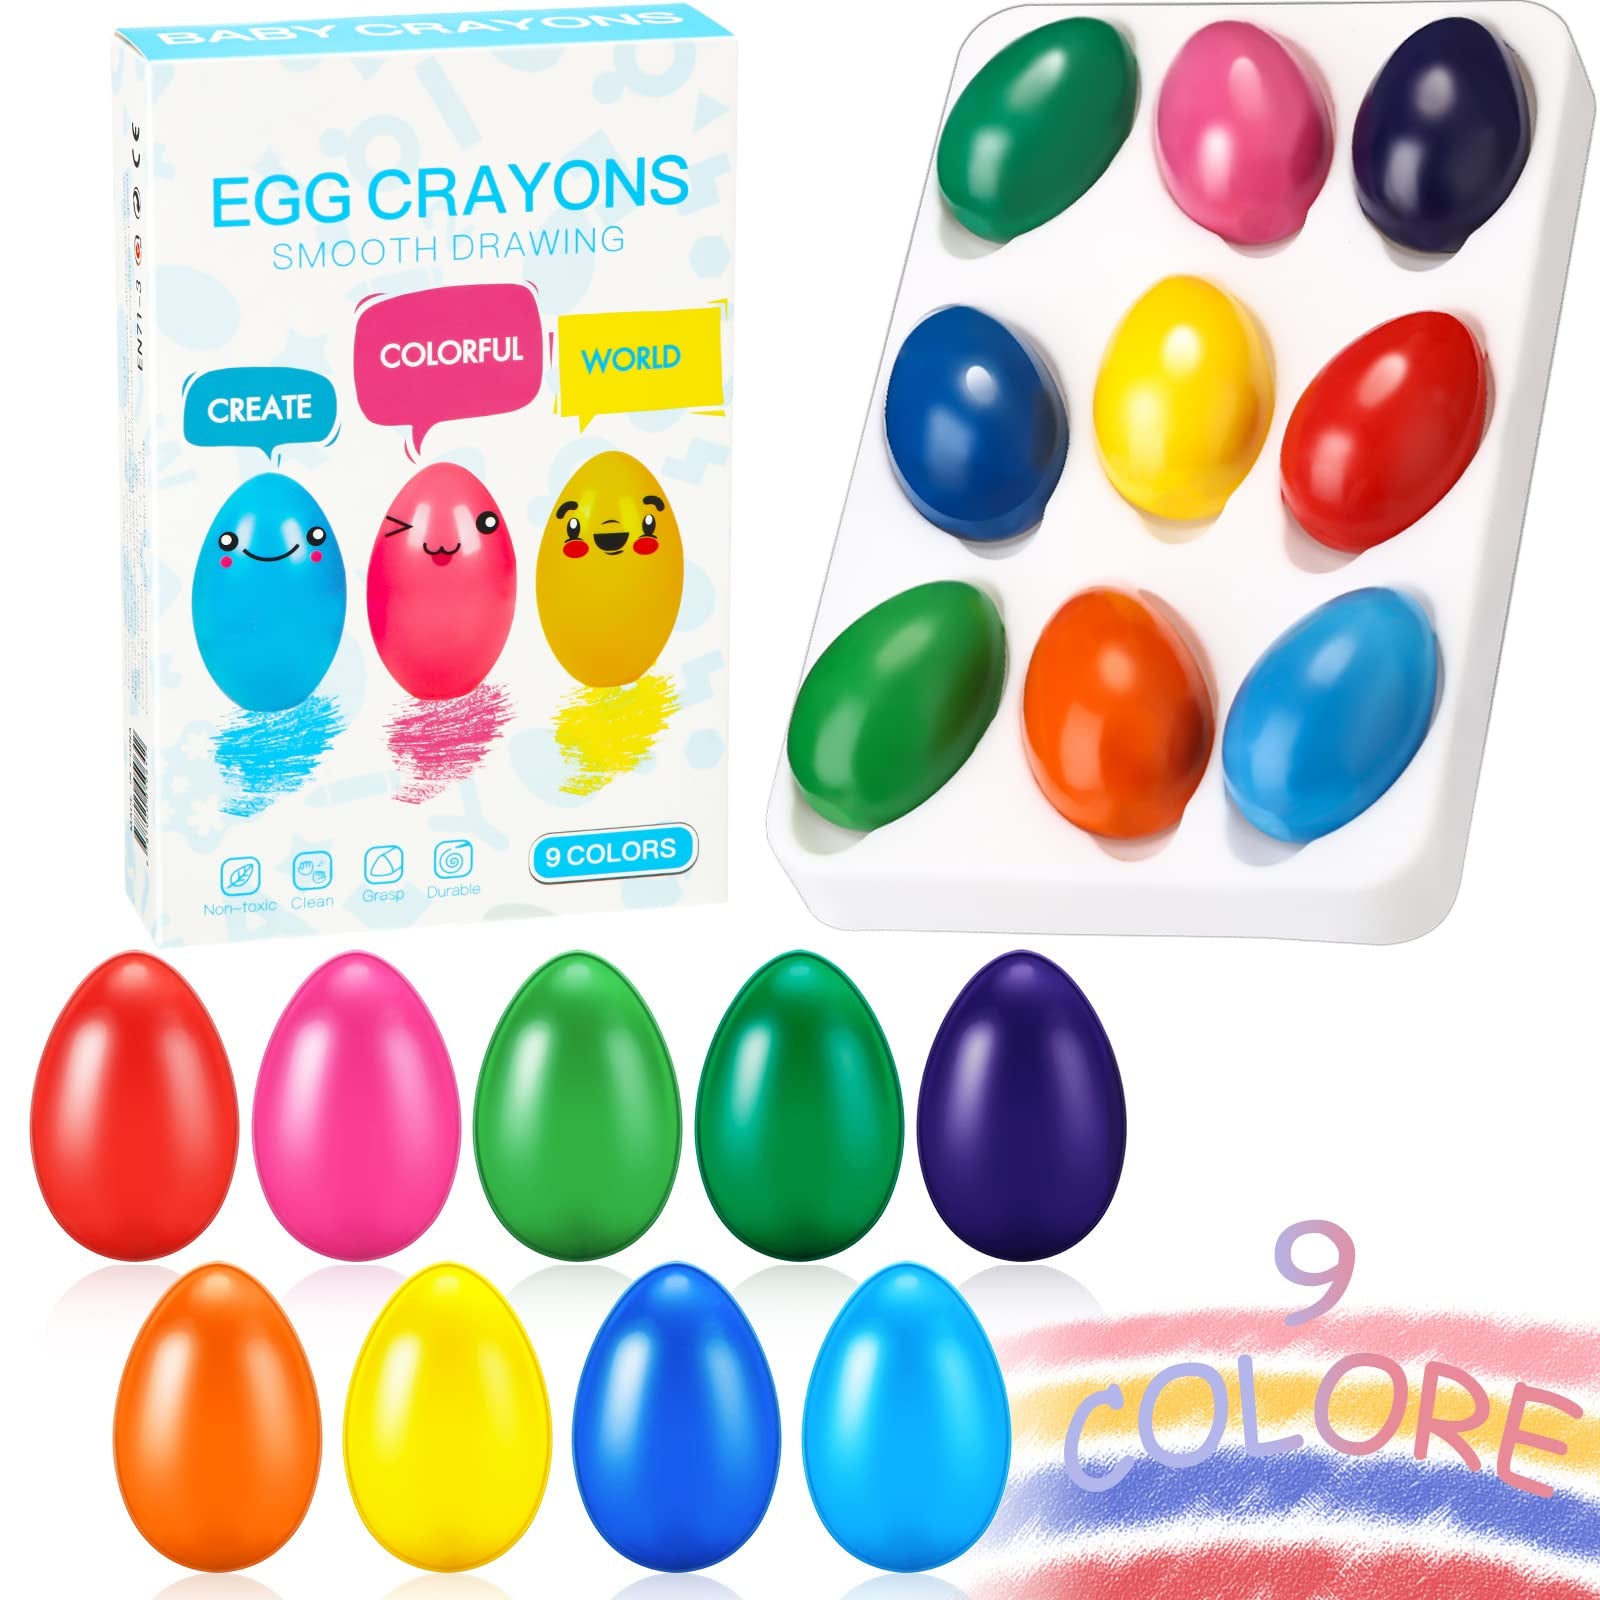 9 colores de crayones de huevo para niños de 1 a 3 años de edad